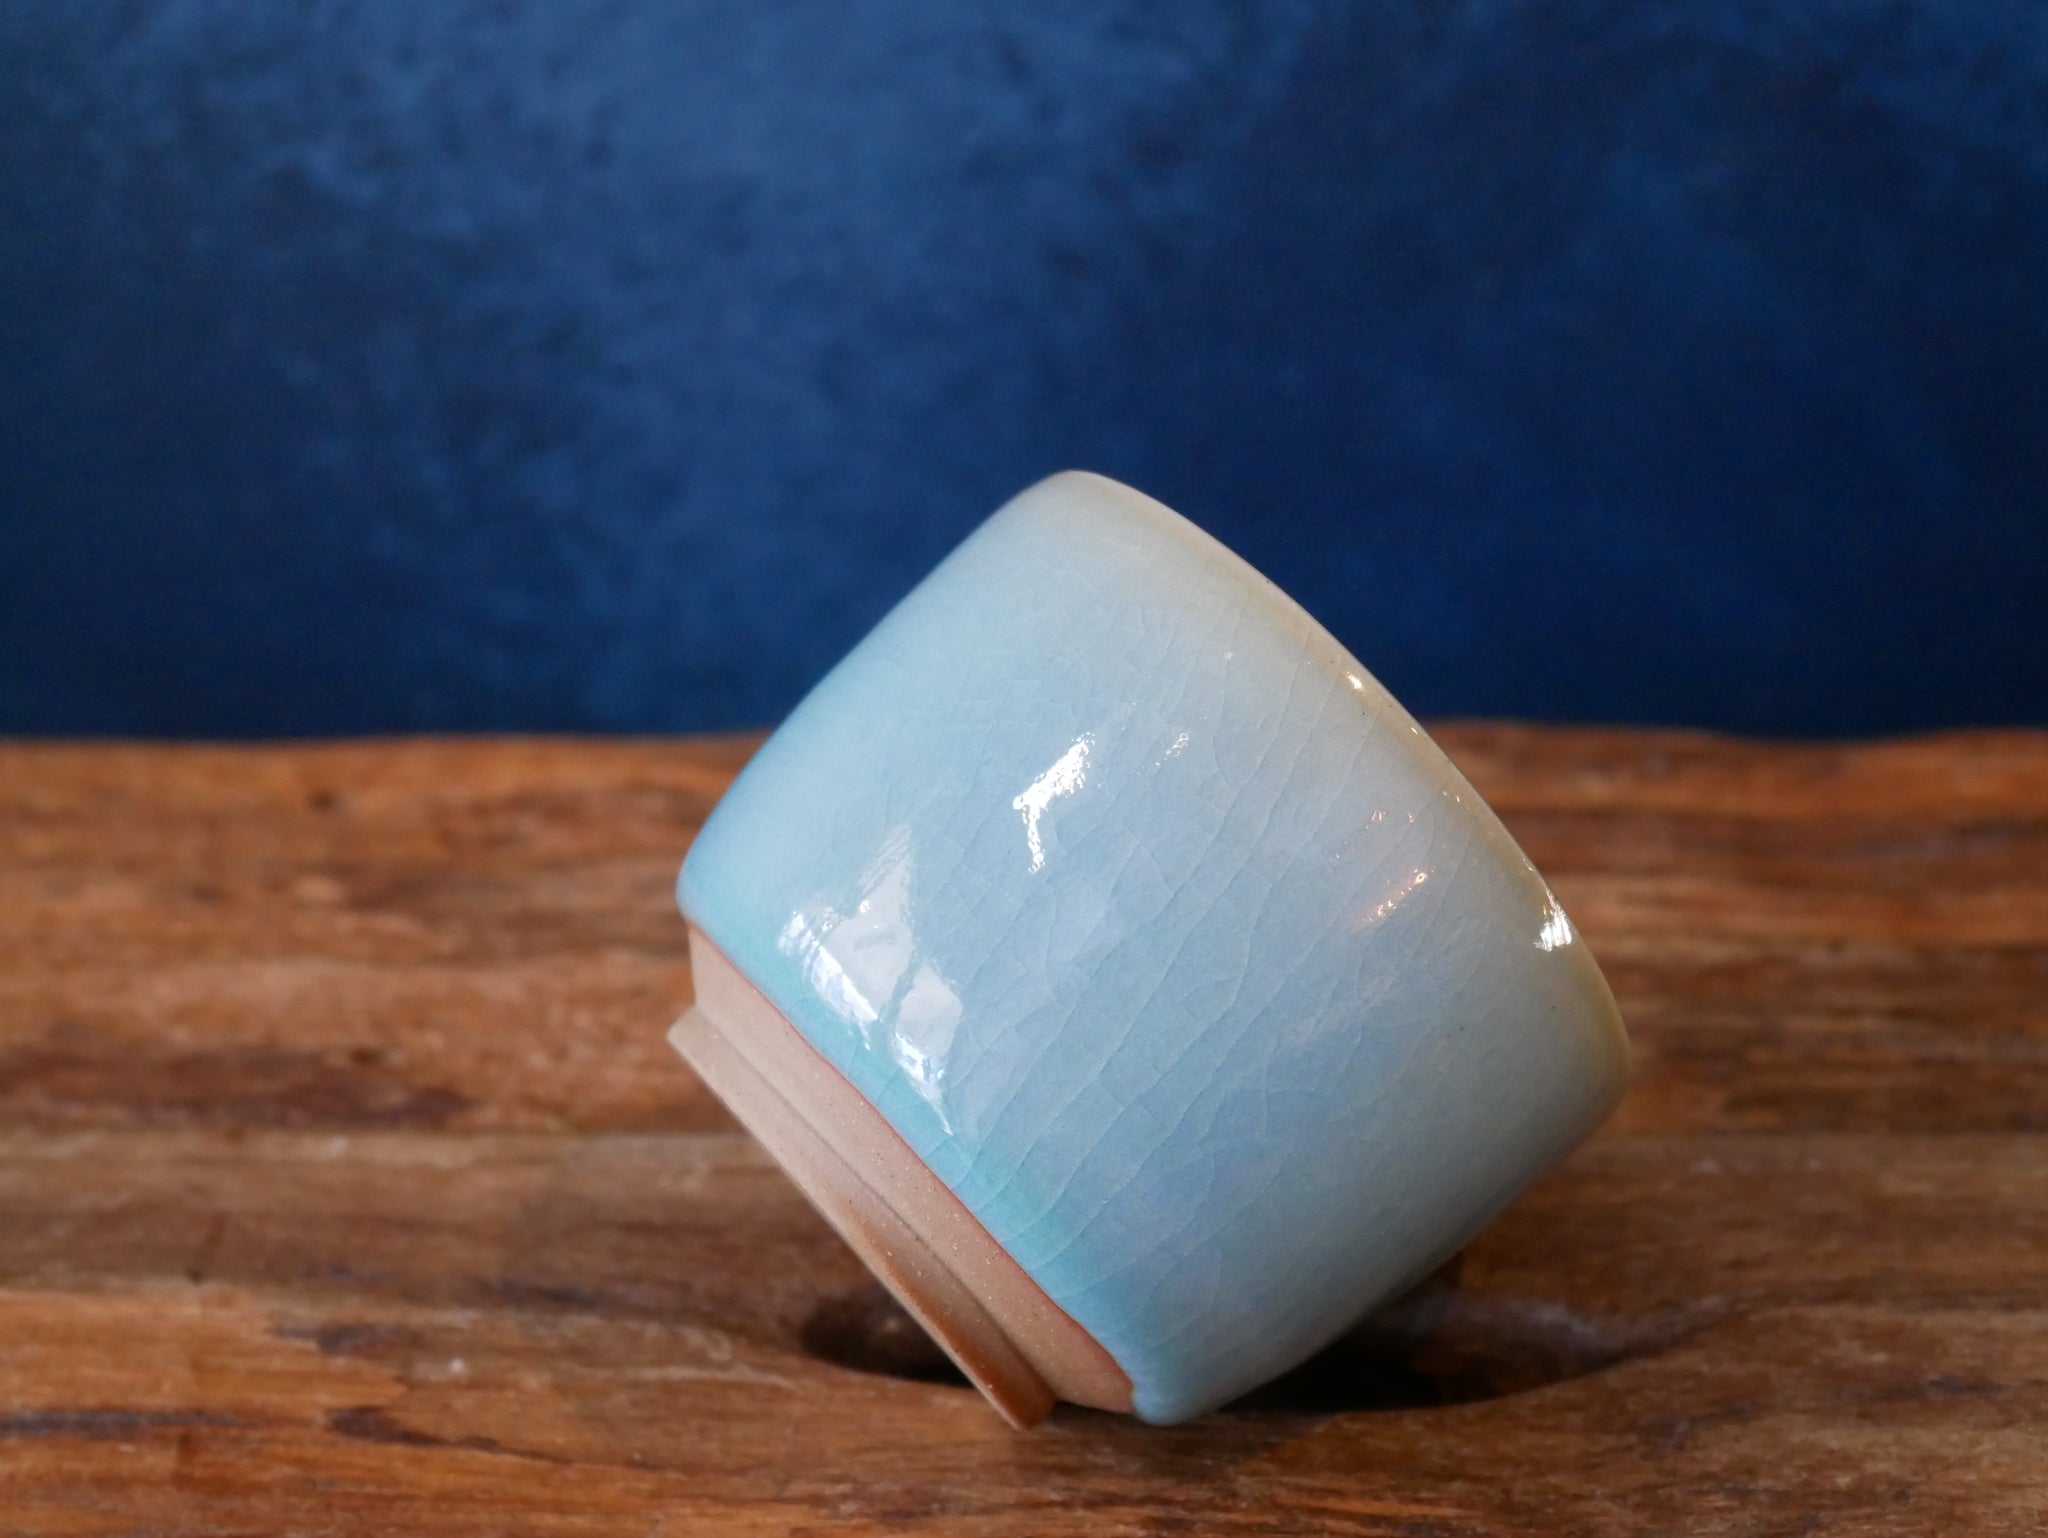 Blue celadon tea cup - ll